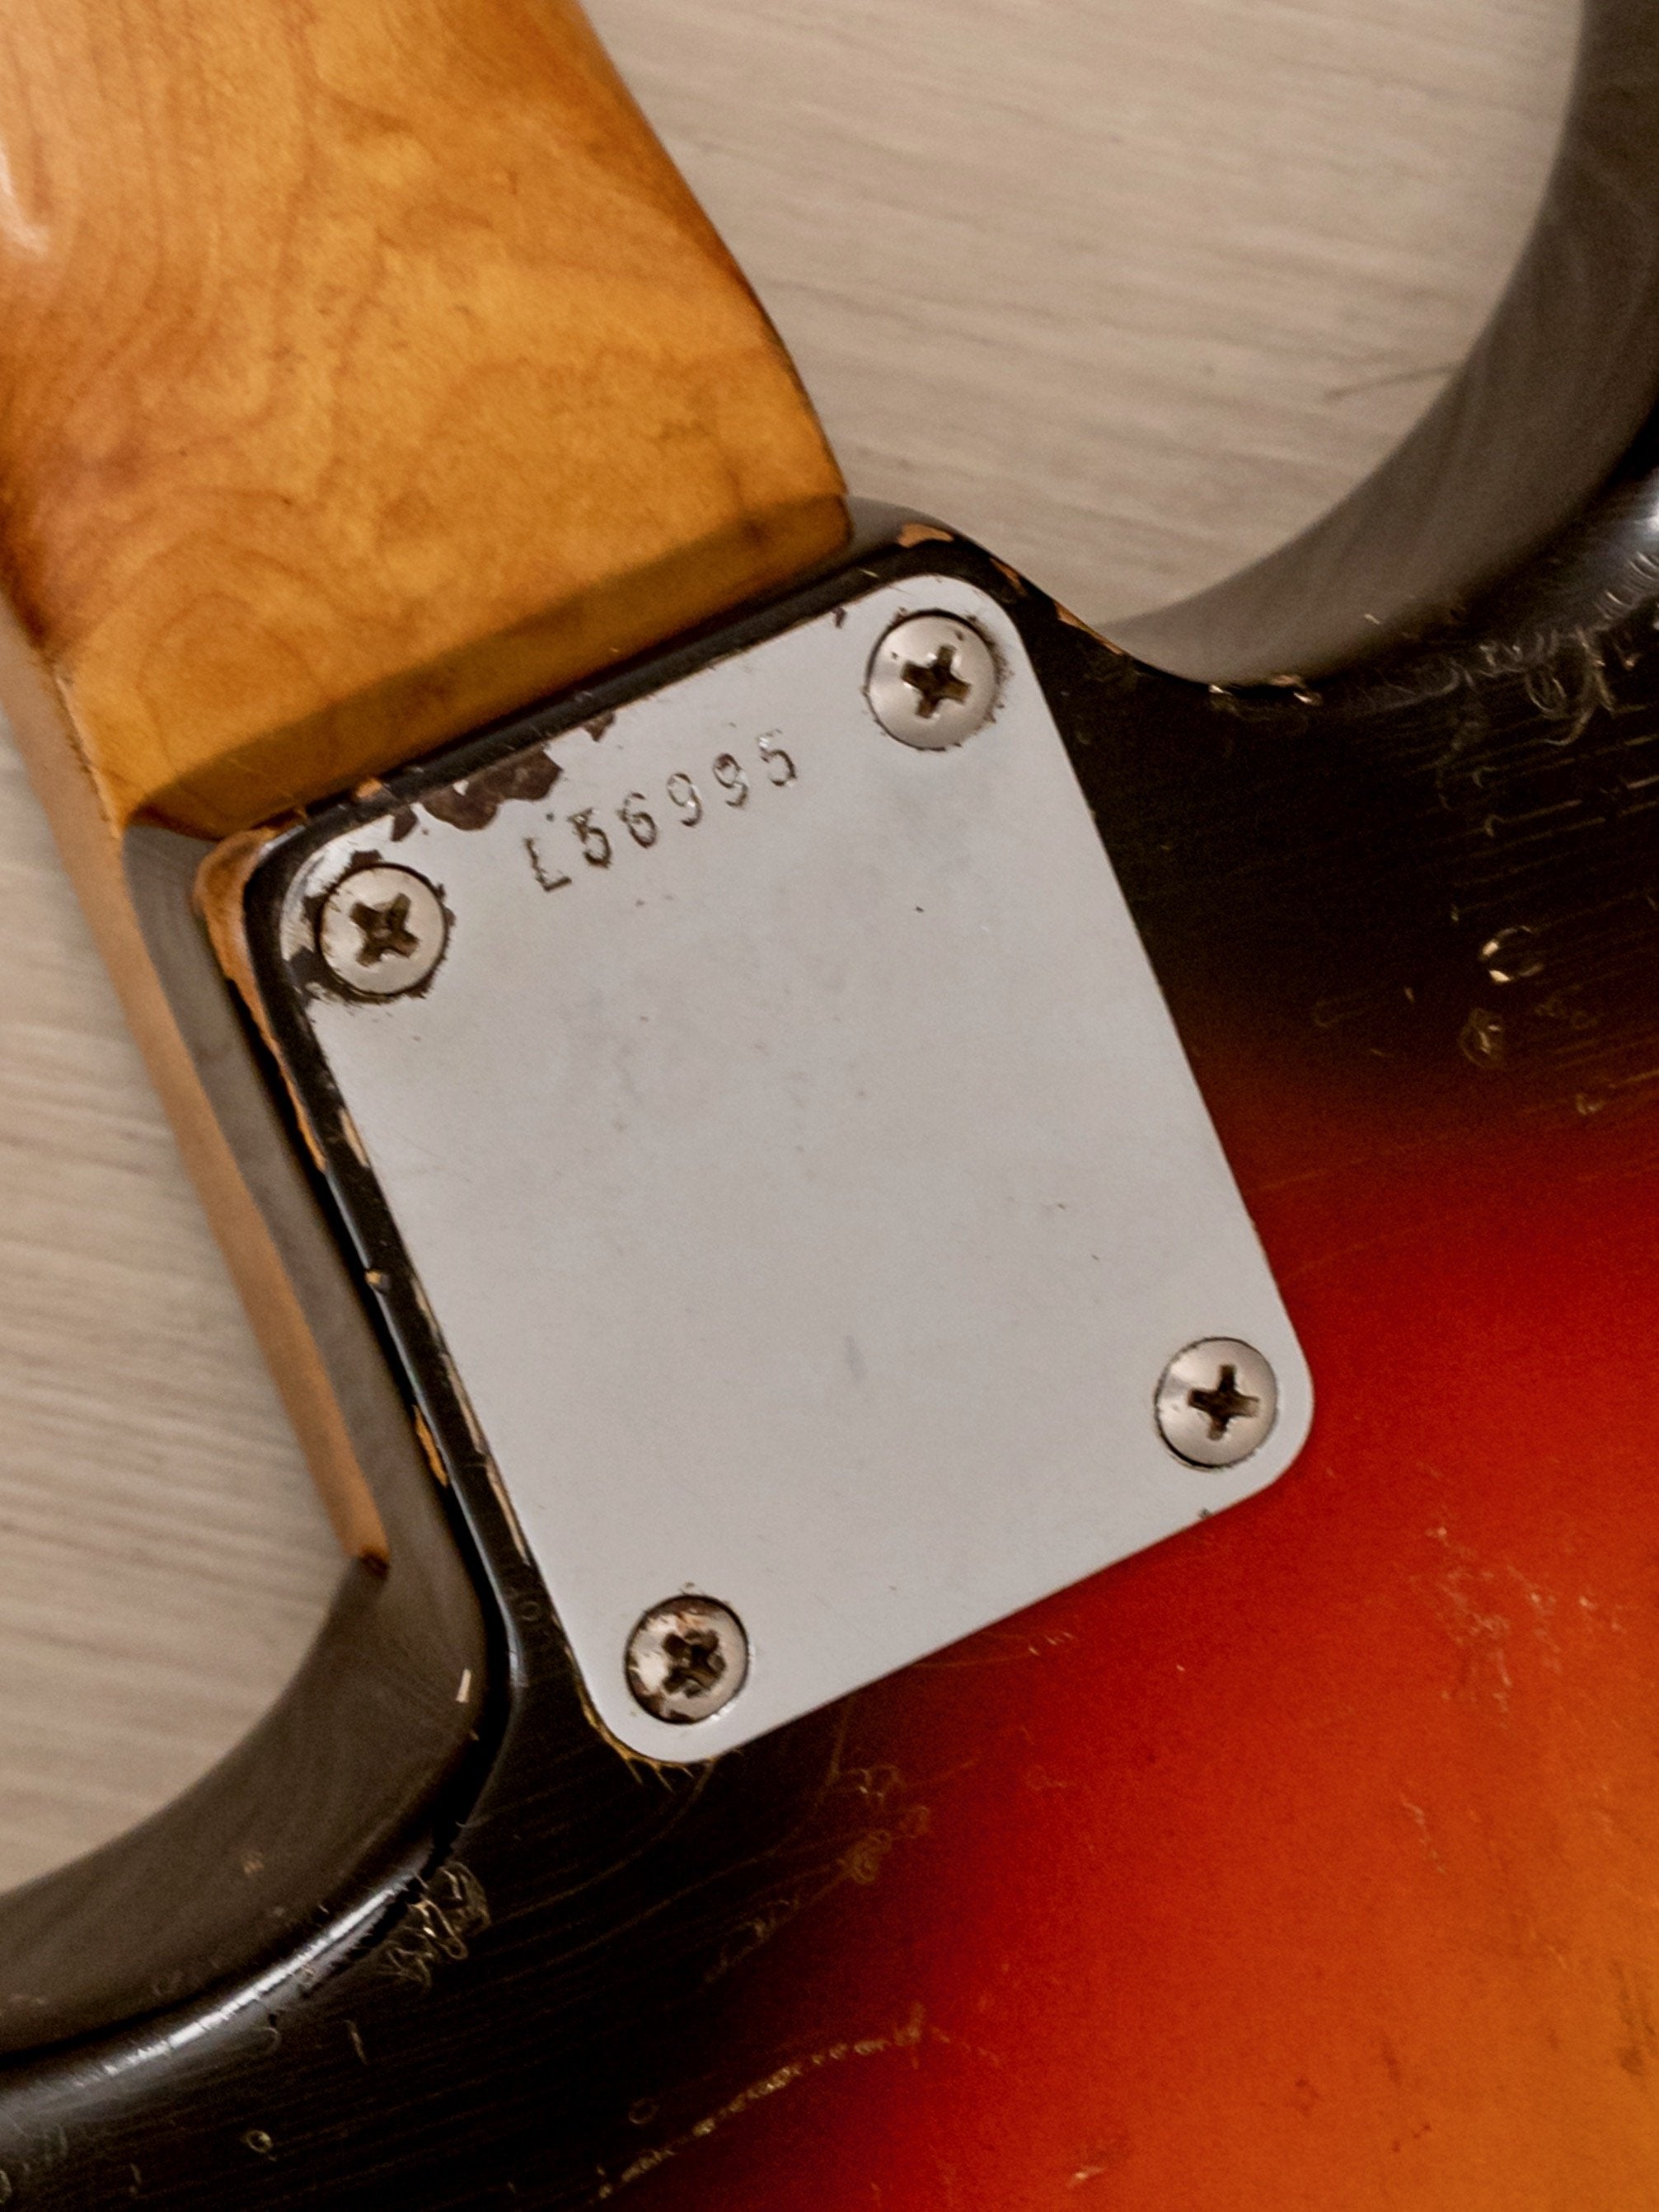 1965 Fender Stratocaster Vintage Electric Guitar Sunburst w/ 1964 Neck Date, Case